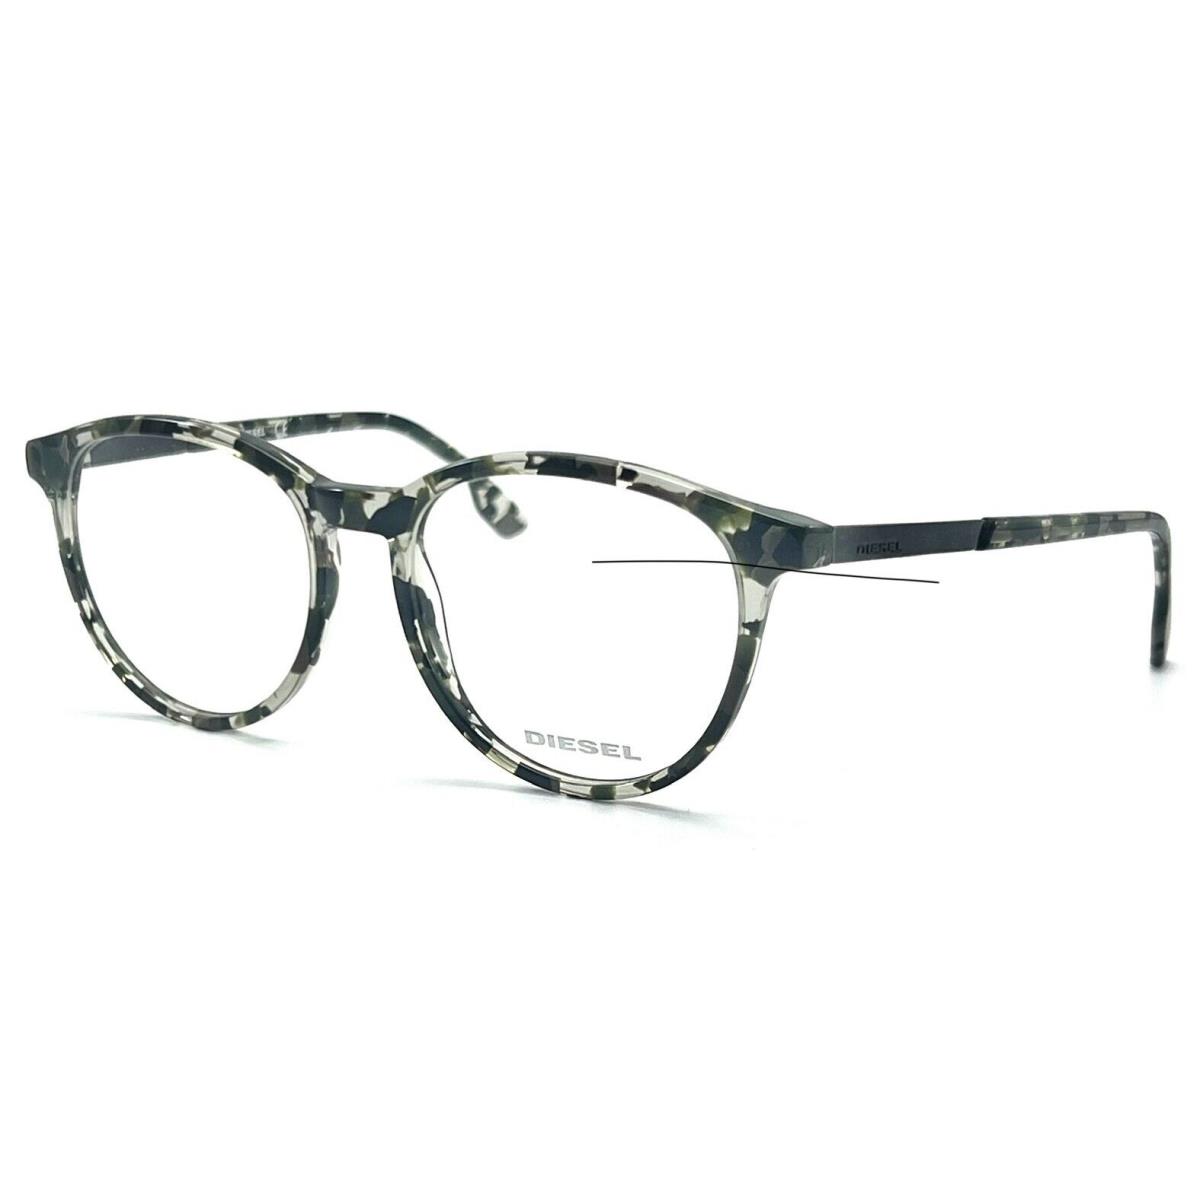 Diesel DL5117 052 Dark Havana Eyeglasses 52-17 145 W/case